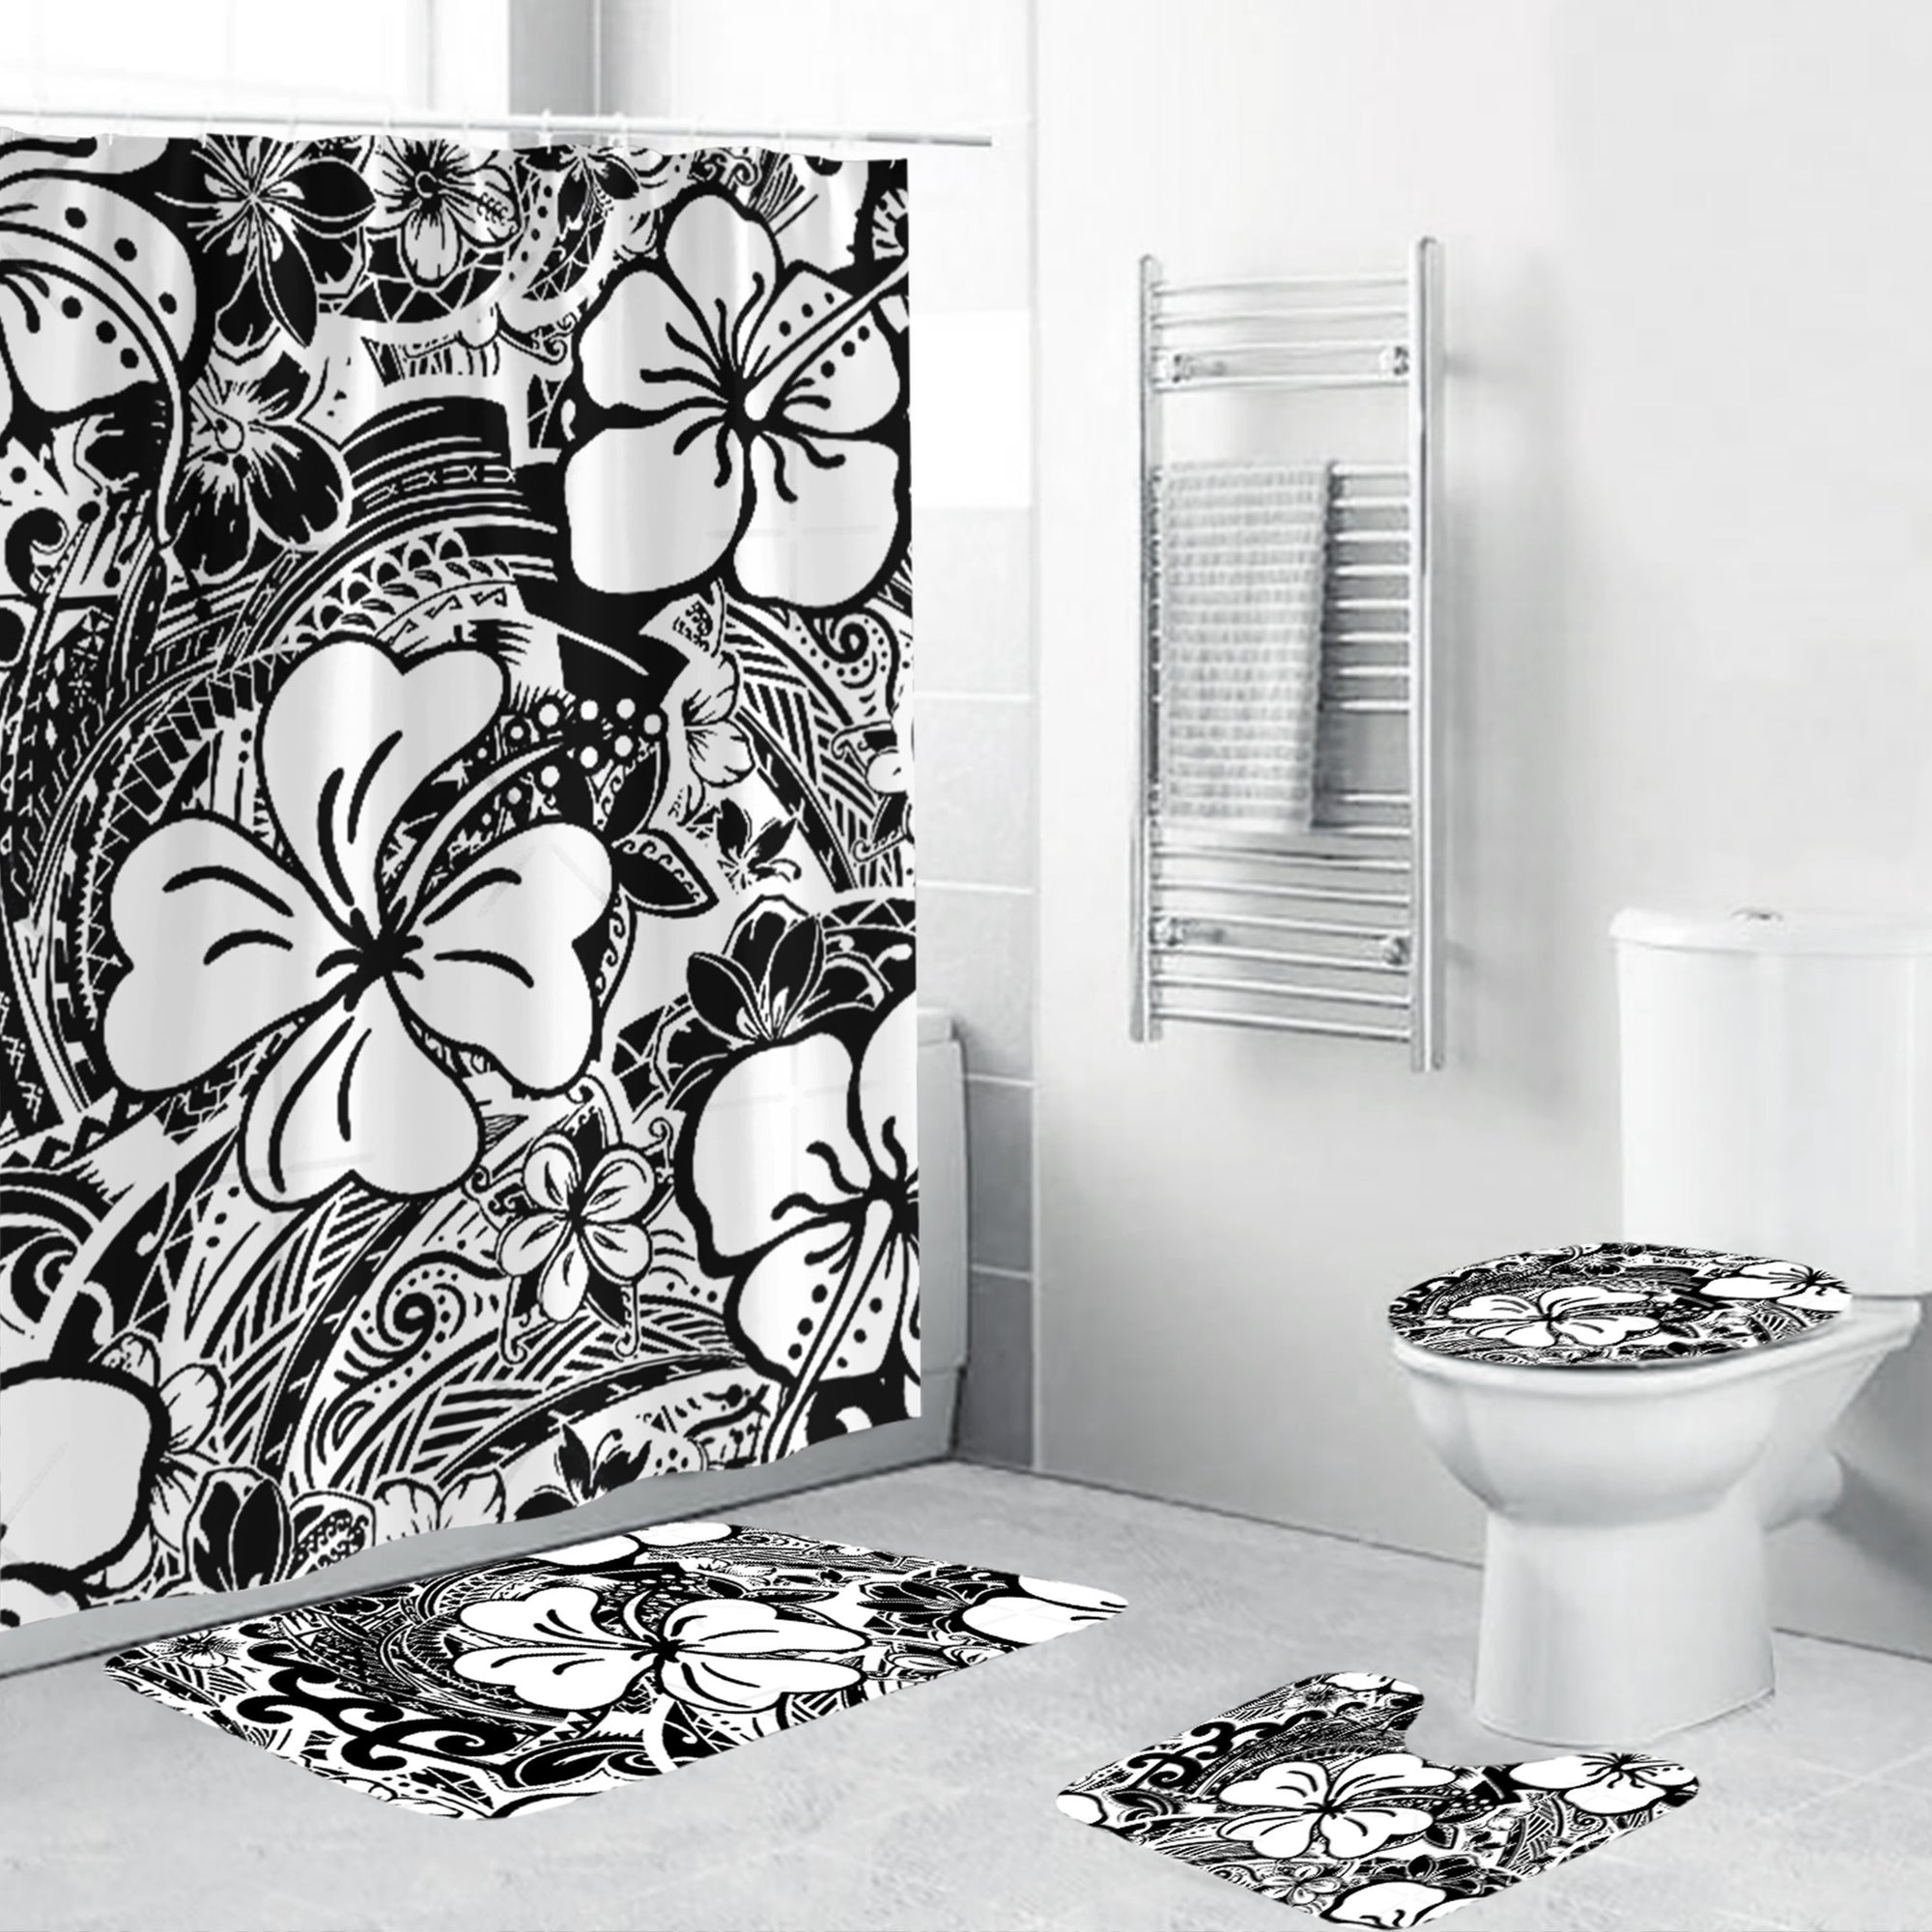 Polynesian Home Set - Polynesian White Hibiscus Bathroom Set LT10 White - Polynesian Pride